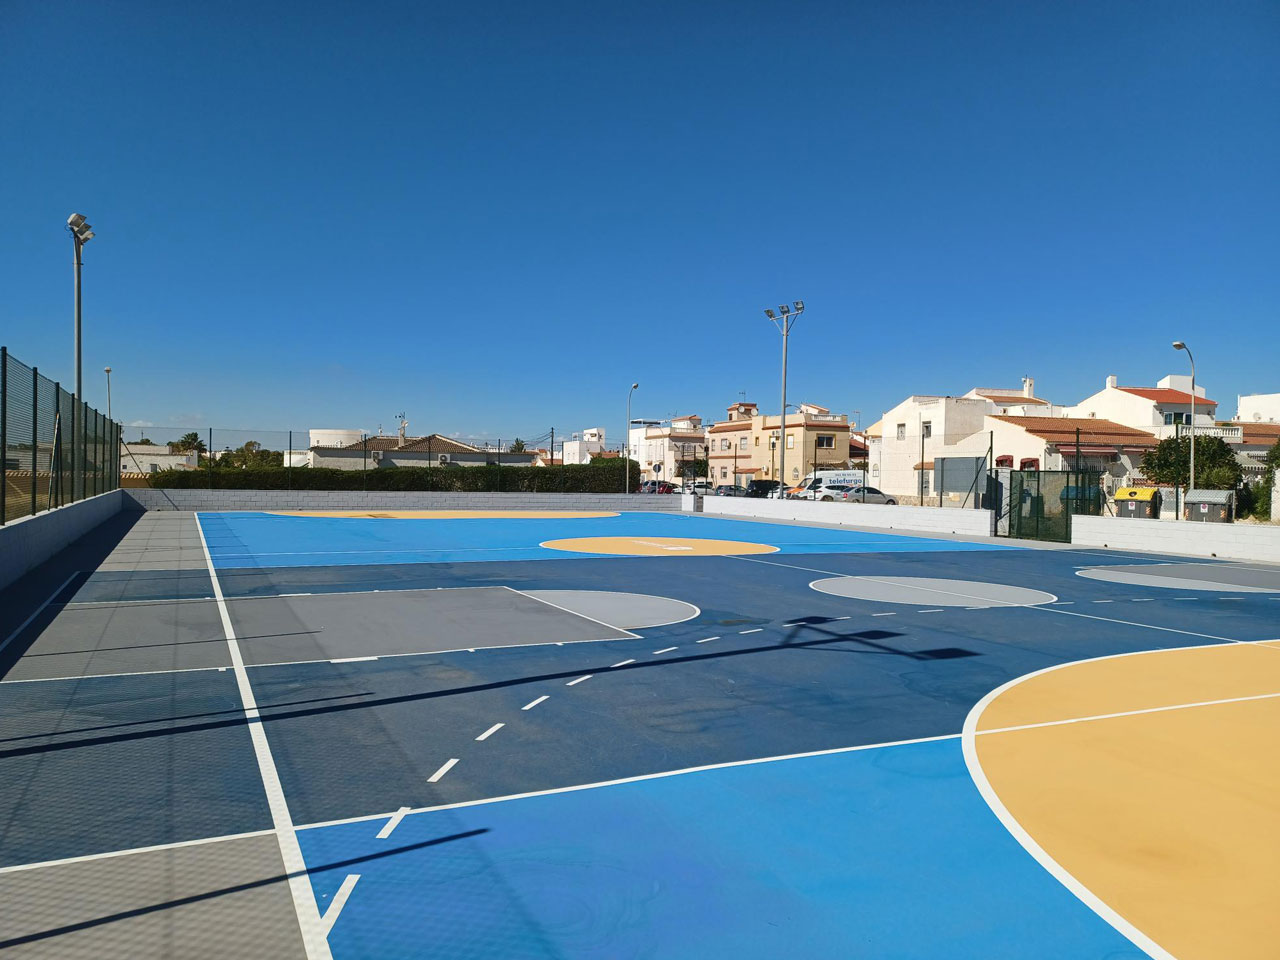 Abala finaliza las pistas azules que consolidan a Torrevieja como referente en la oferta de instalaciones deportivas al aire libre